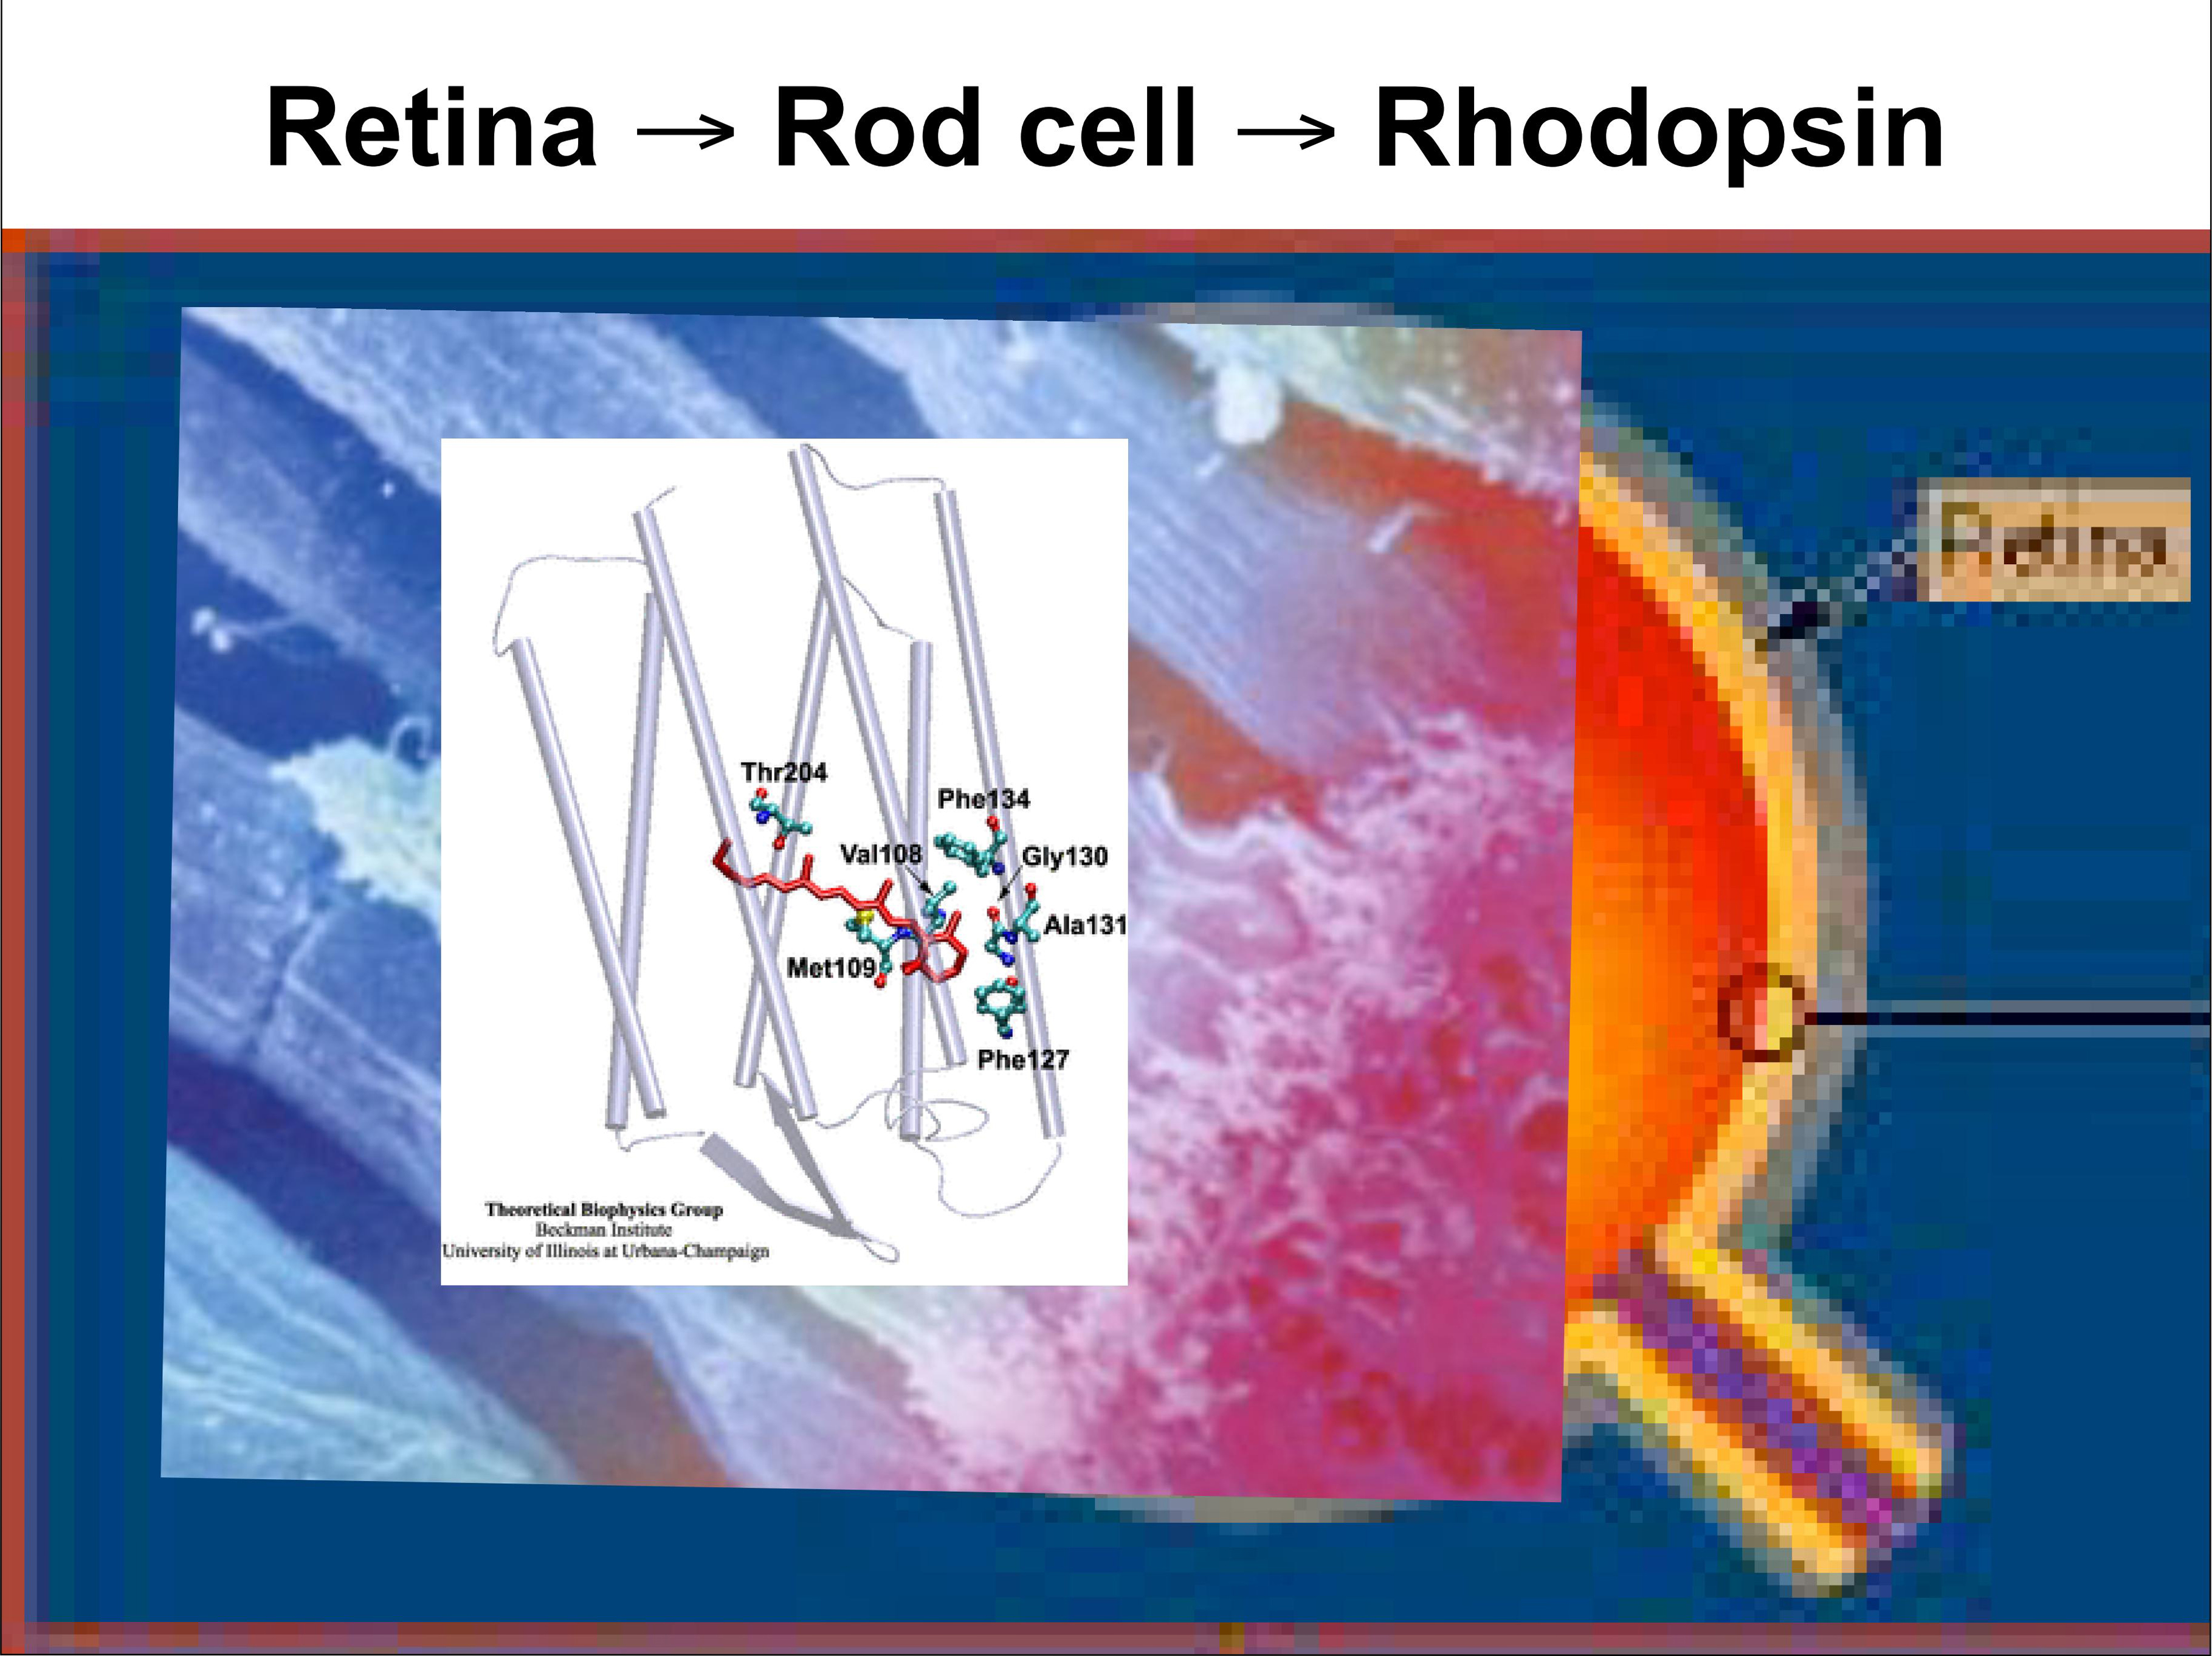 Retina -> Rod cell -> Rhodopsin